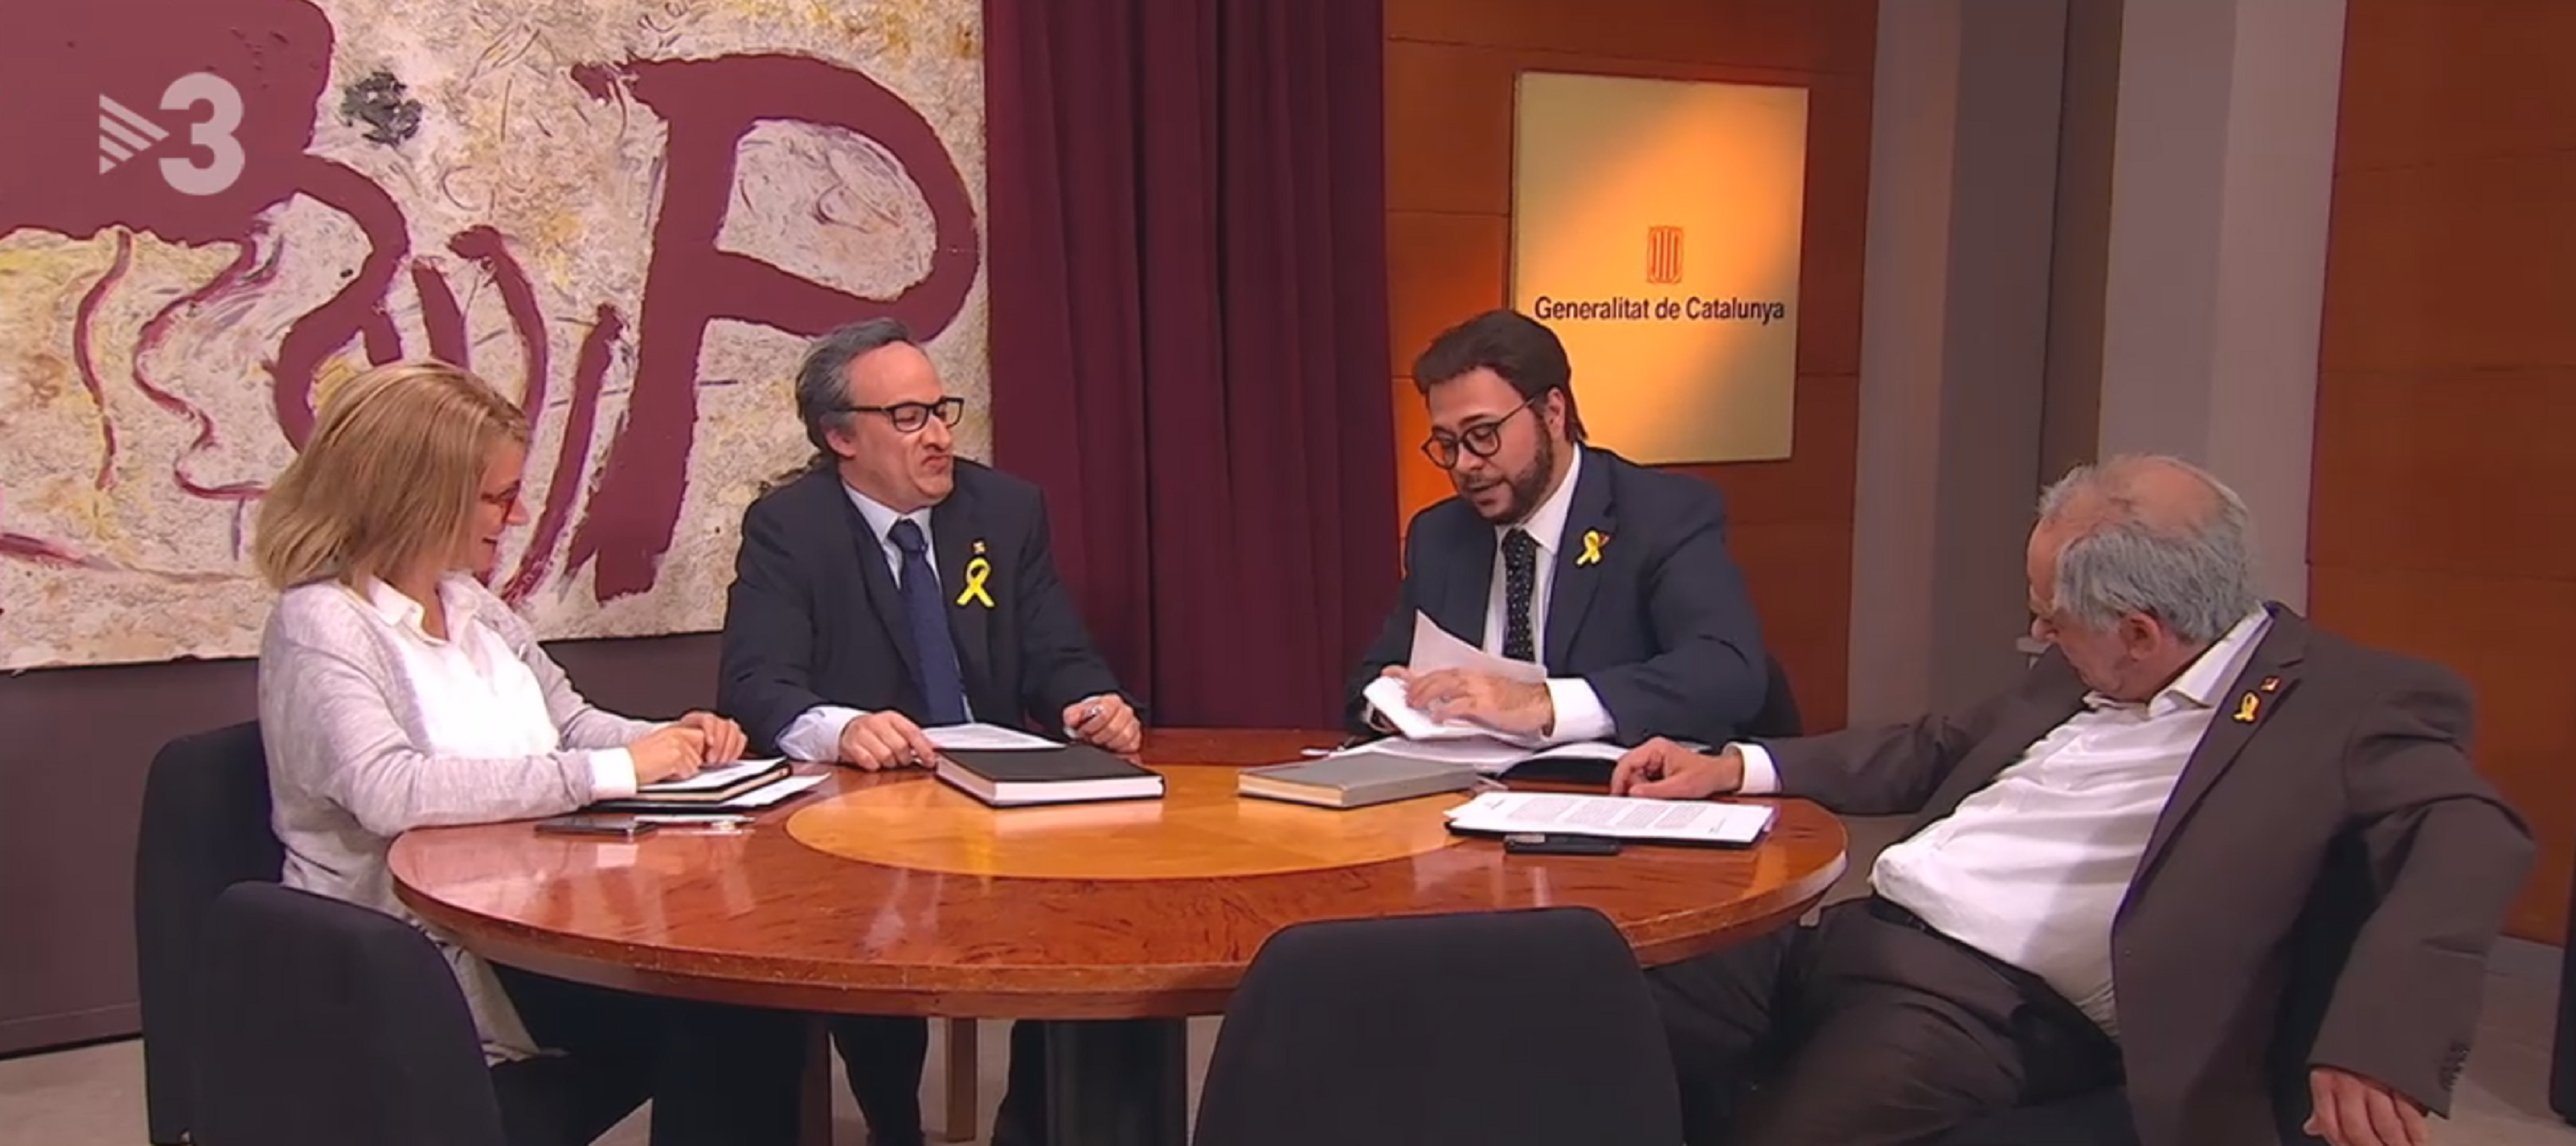 TV3 celebra que ya tiene 20 millones de € extra: ¿volverá Jaume Roures?